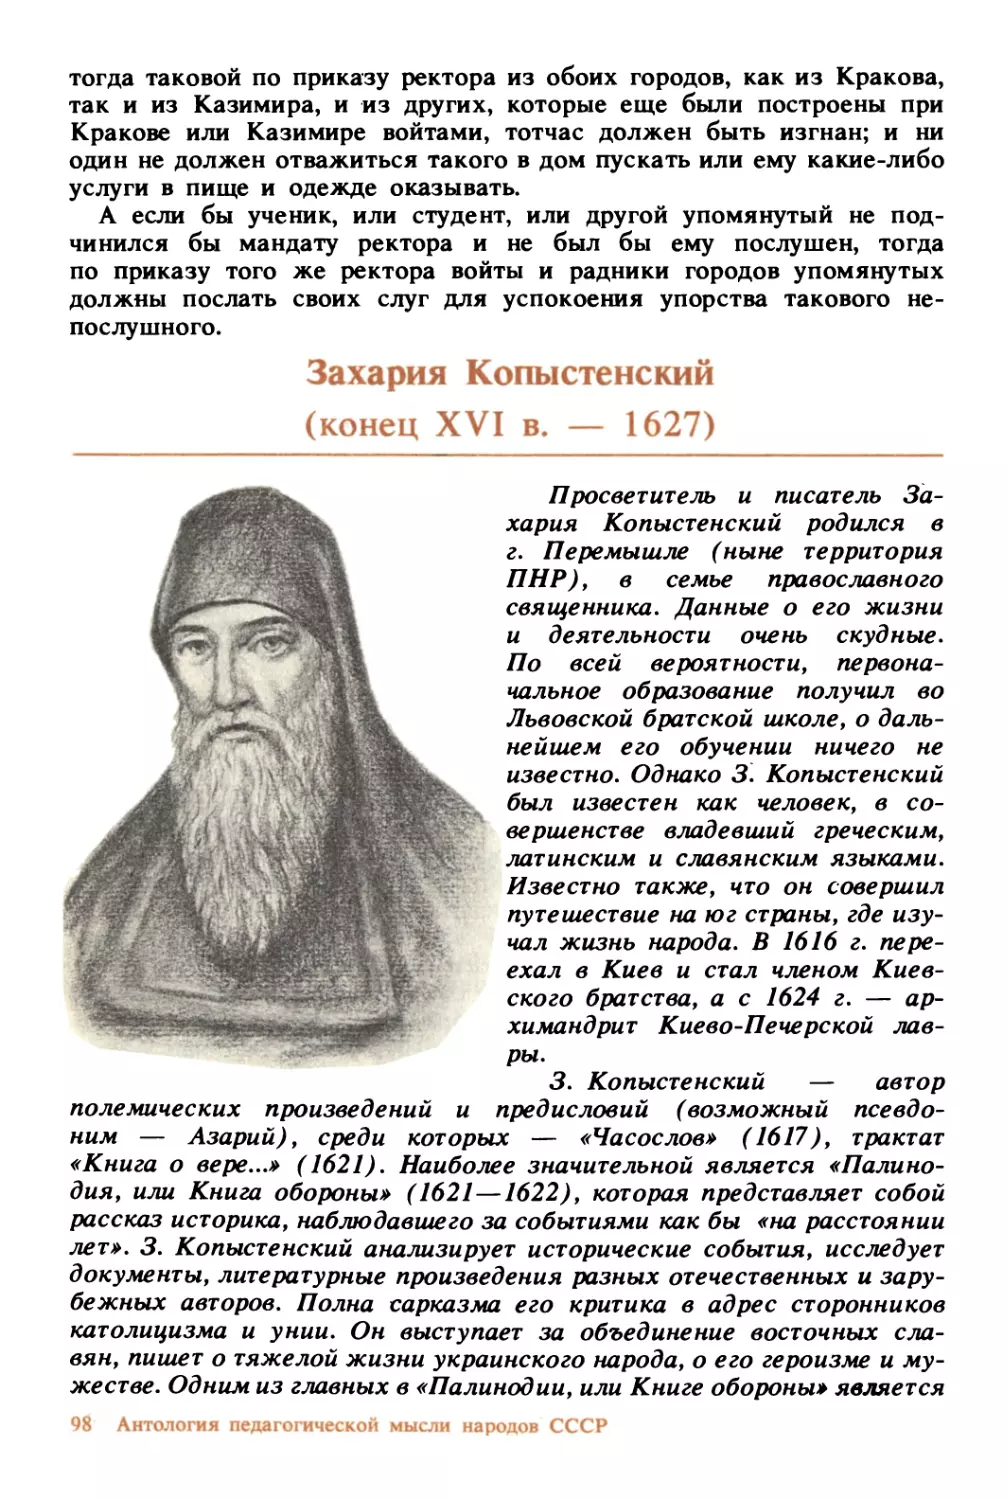 Захария Копыстенский